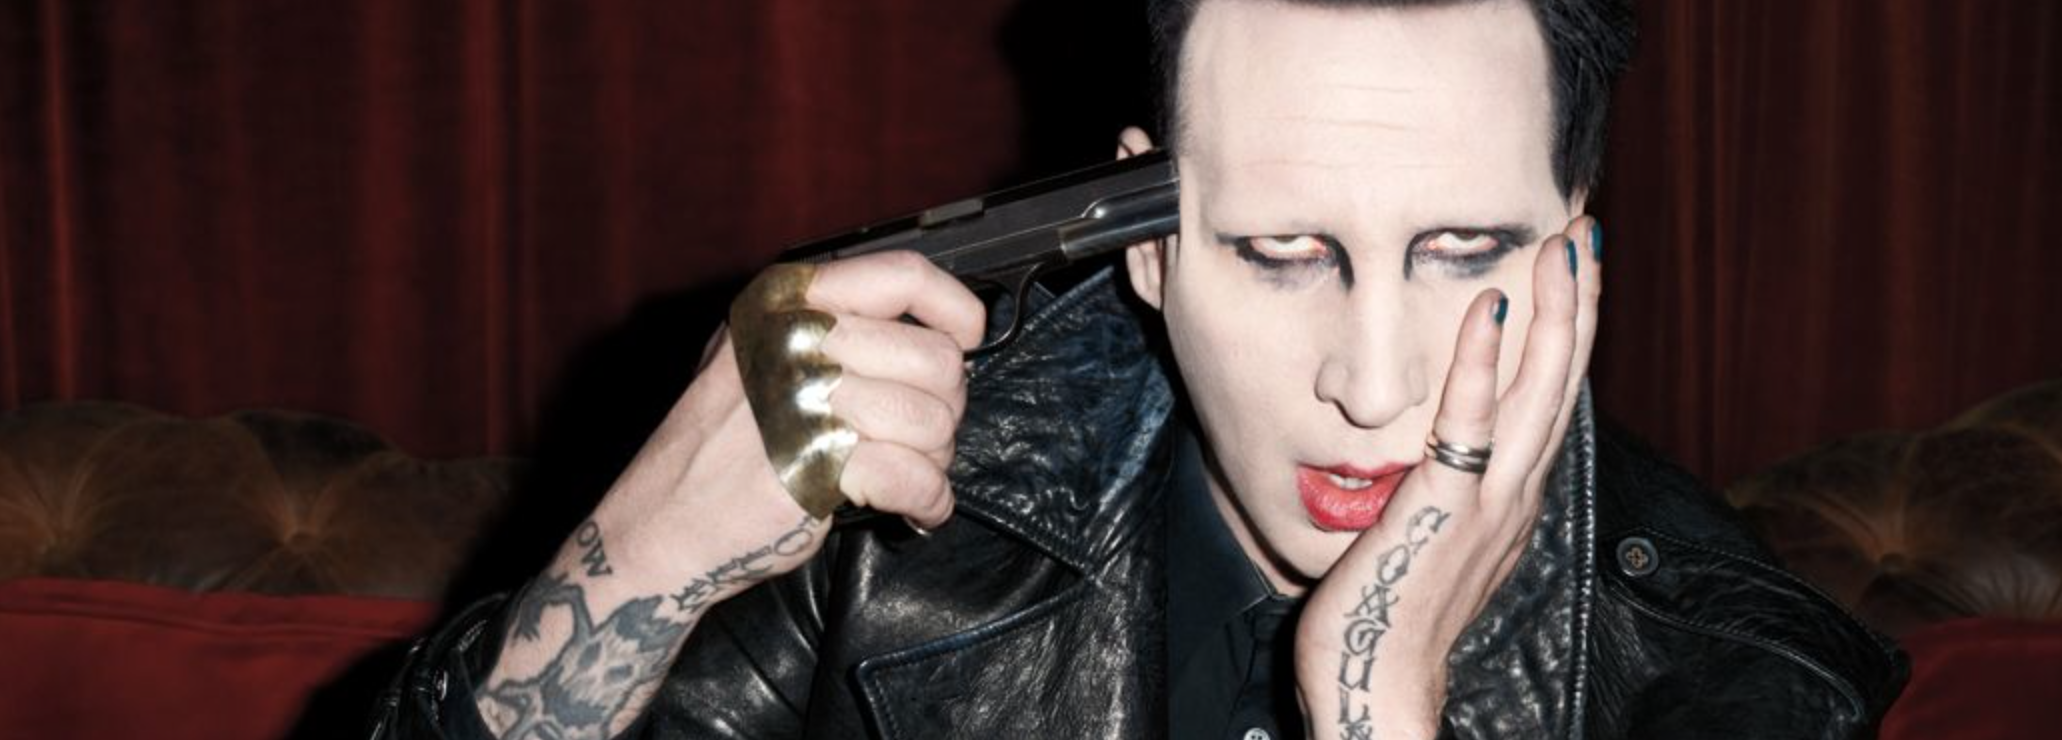 Marilyn Manson Details Strange Sex Life